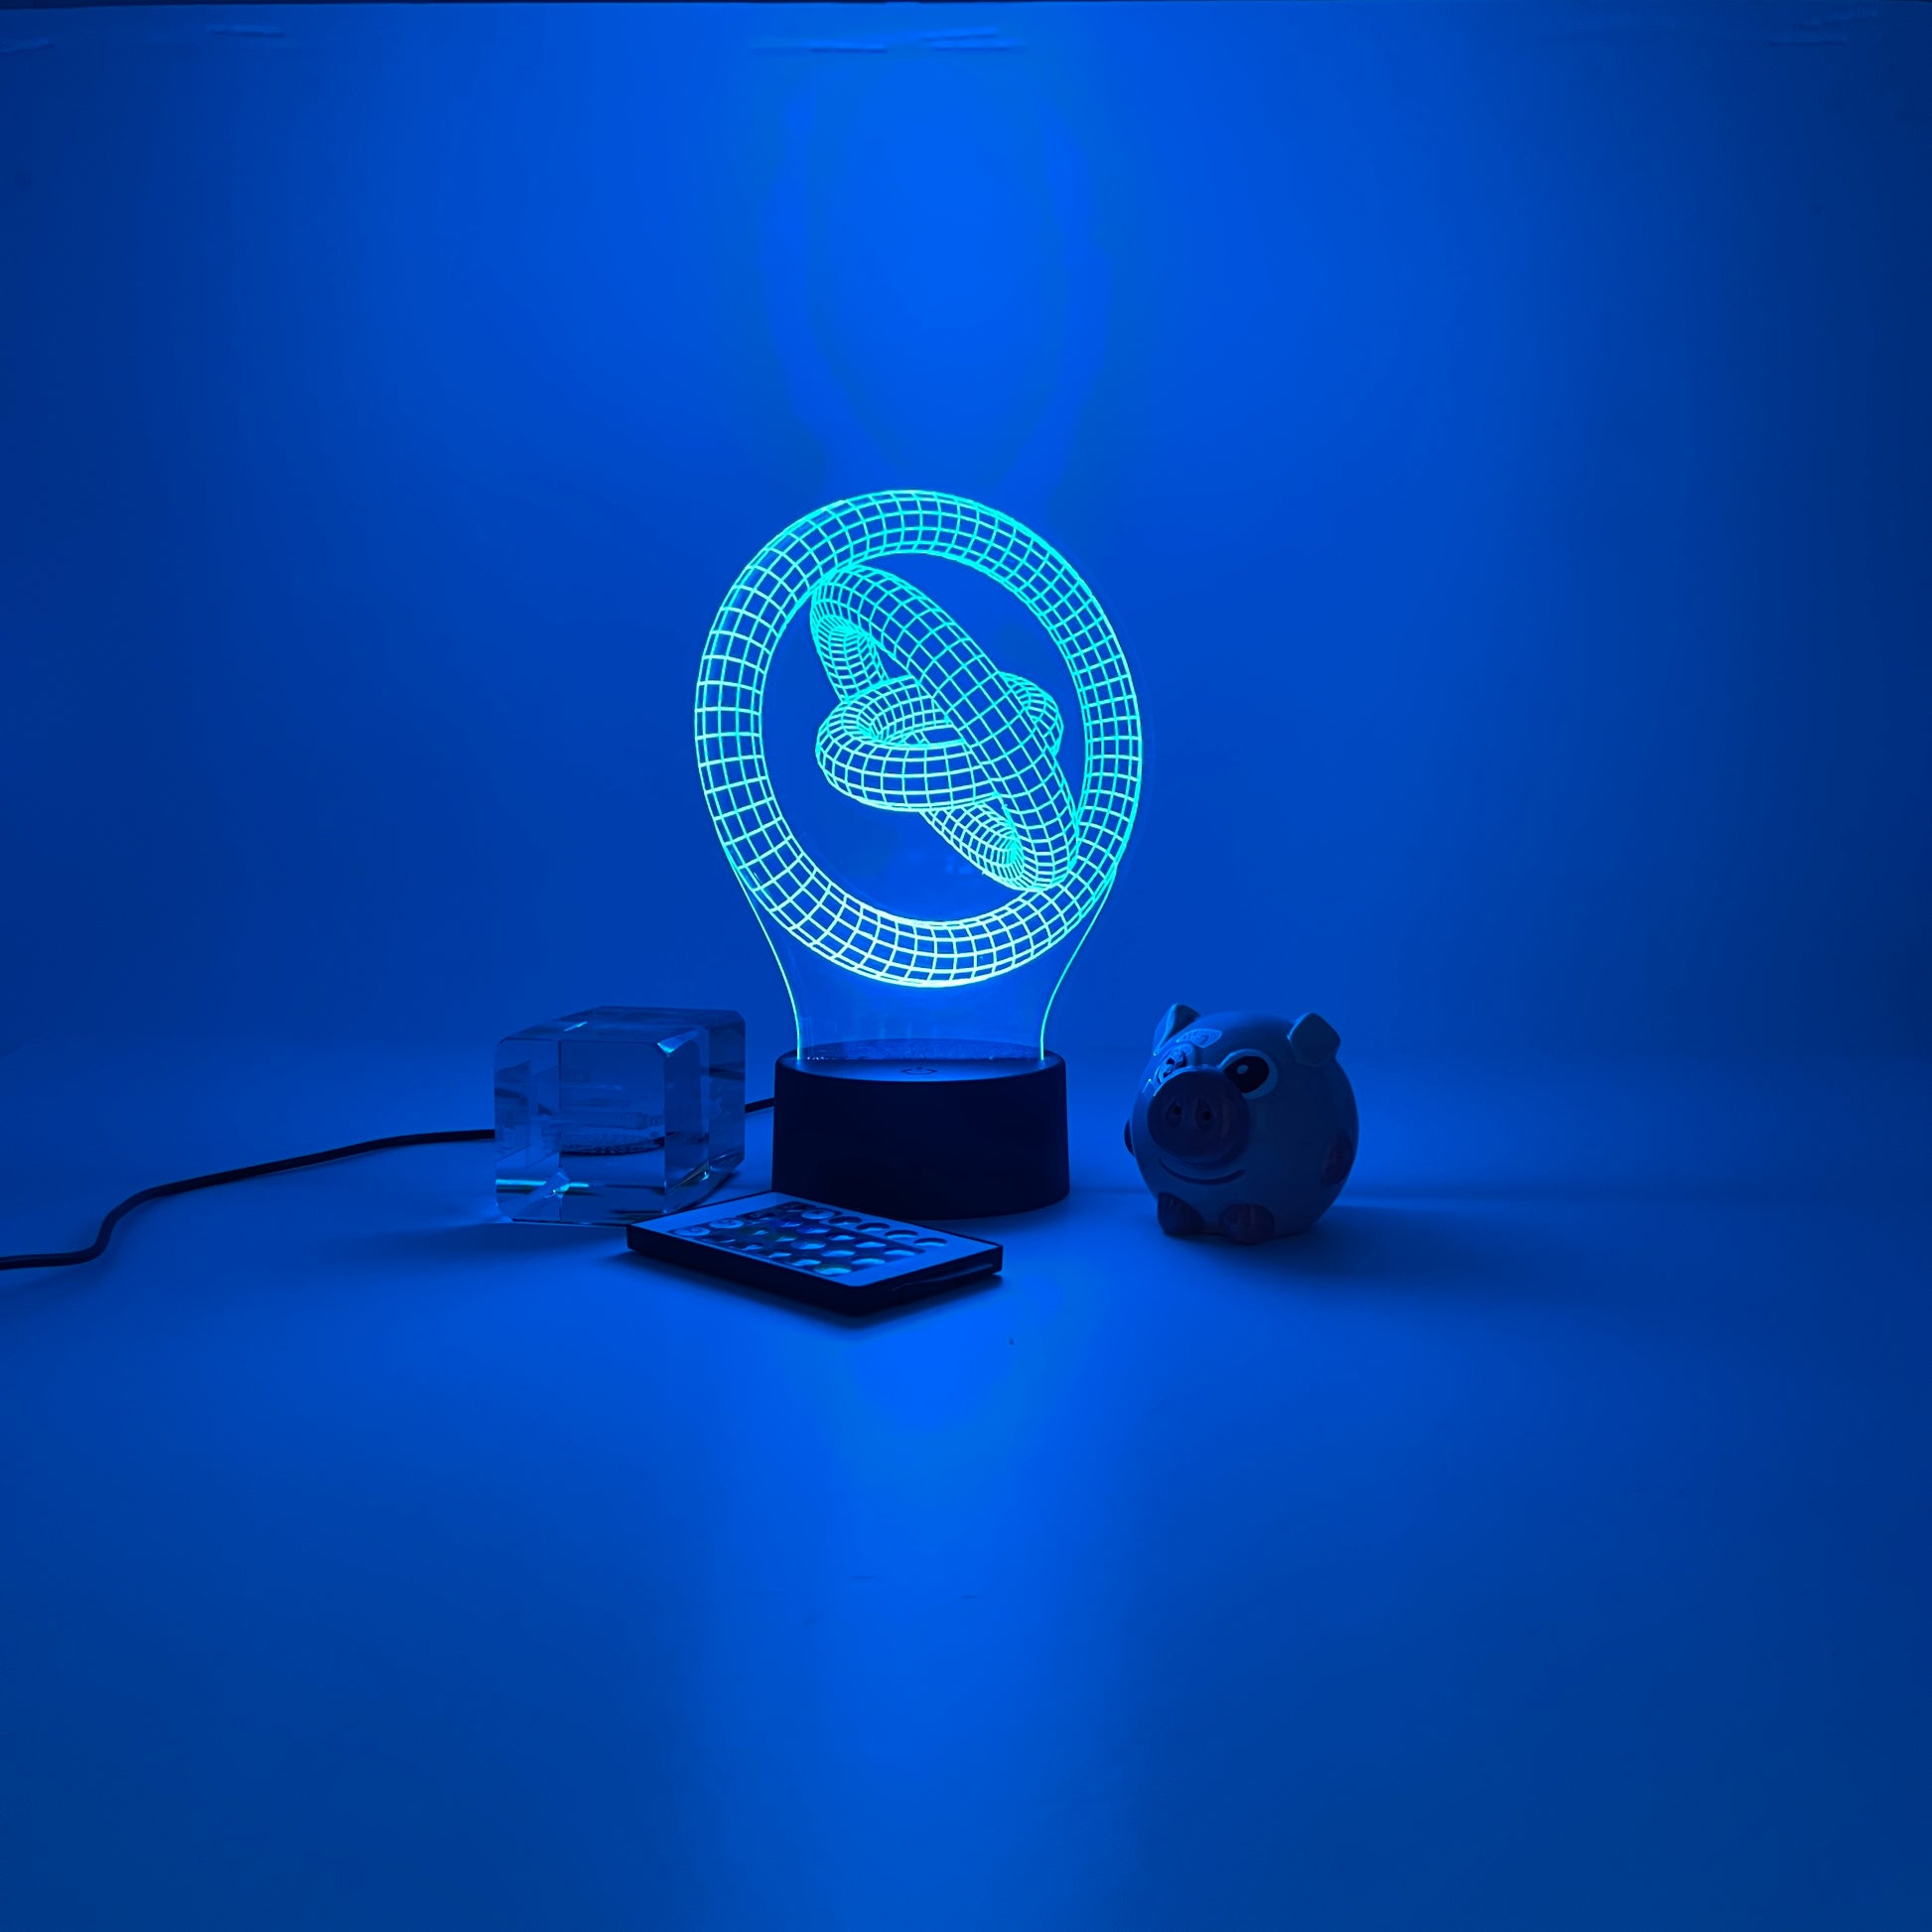 Personalized Torus Knot 3D LED Light Hologram Illusions